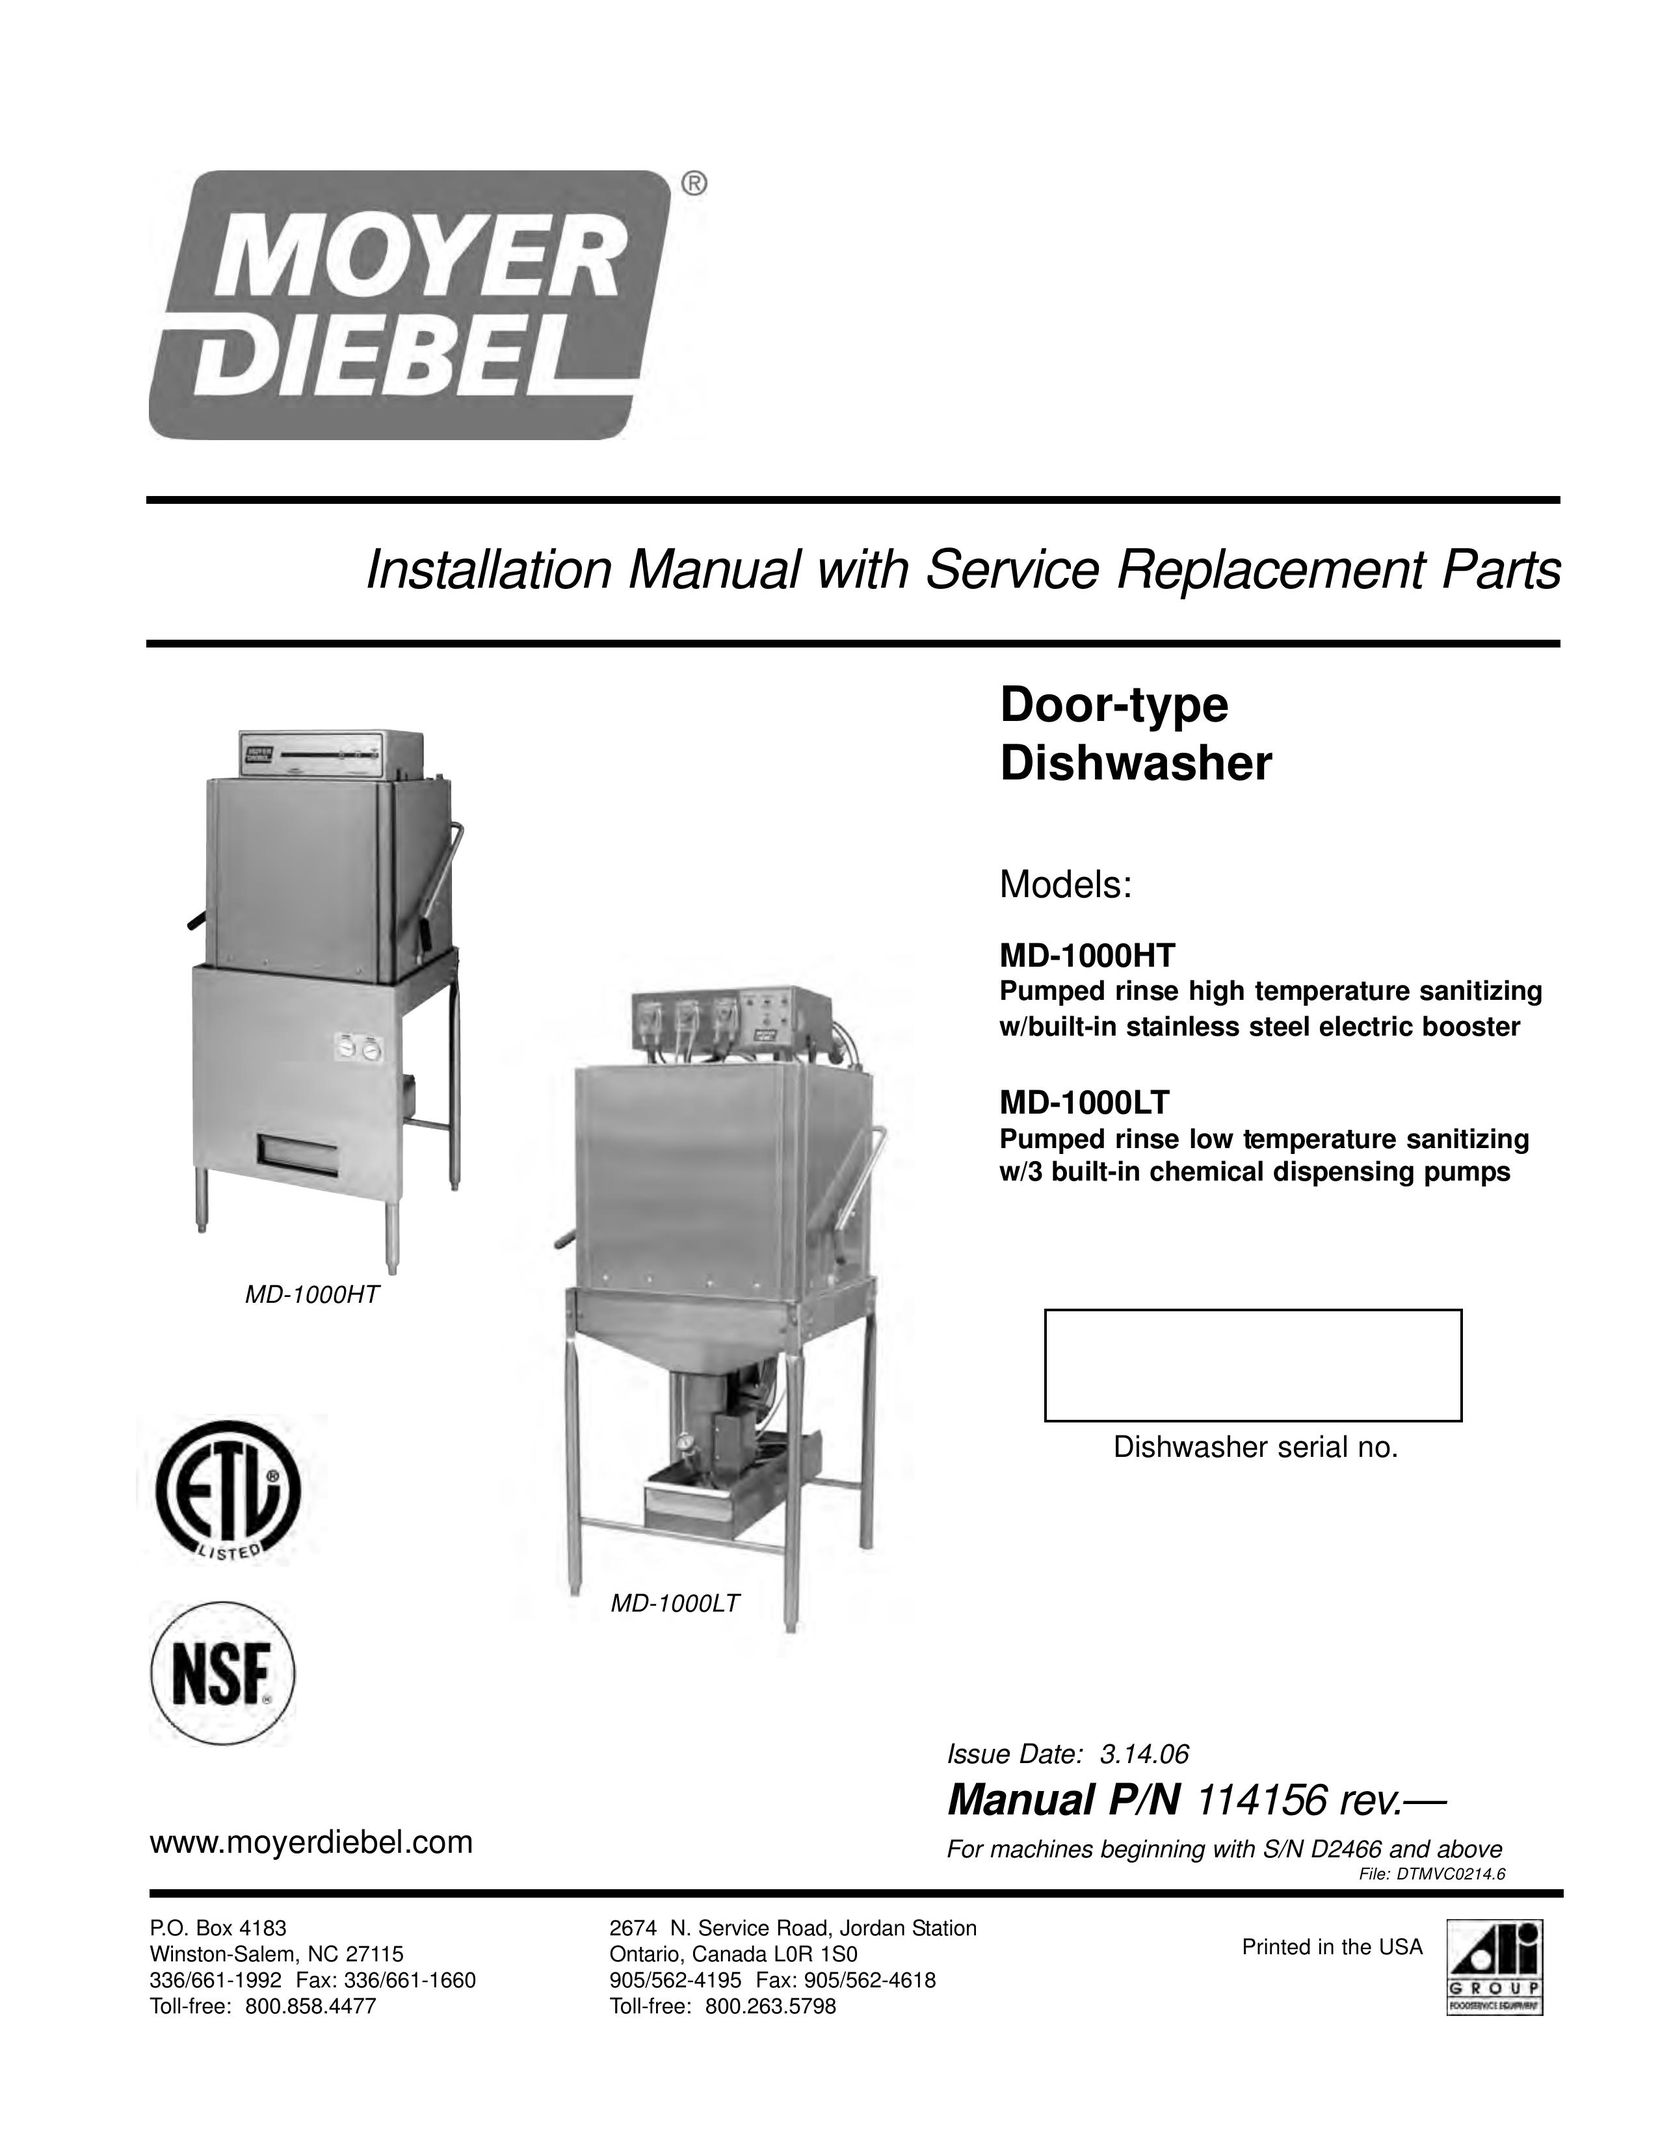 Moyer Diebel MD-1000LT Dishwasher User Manual